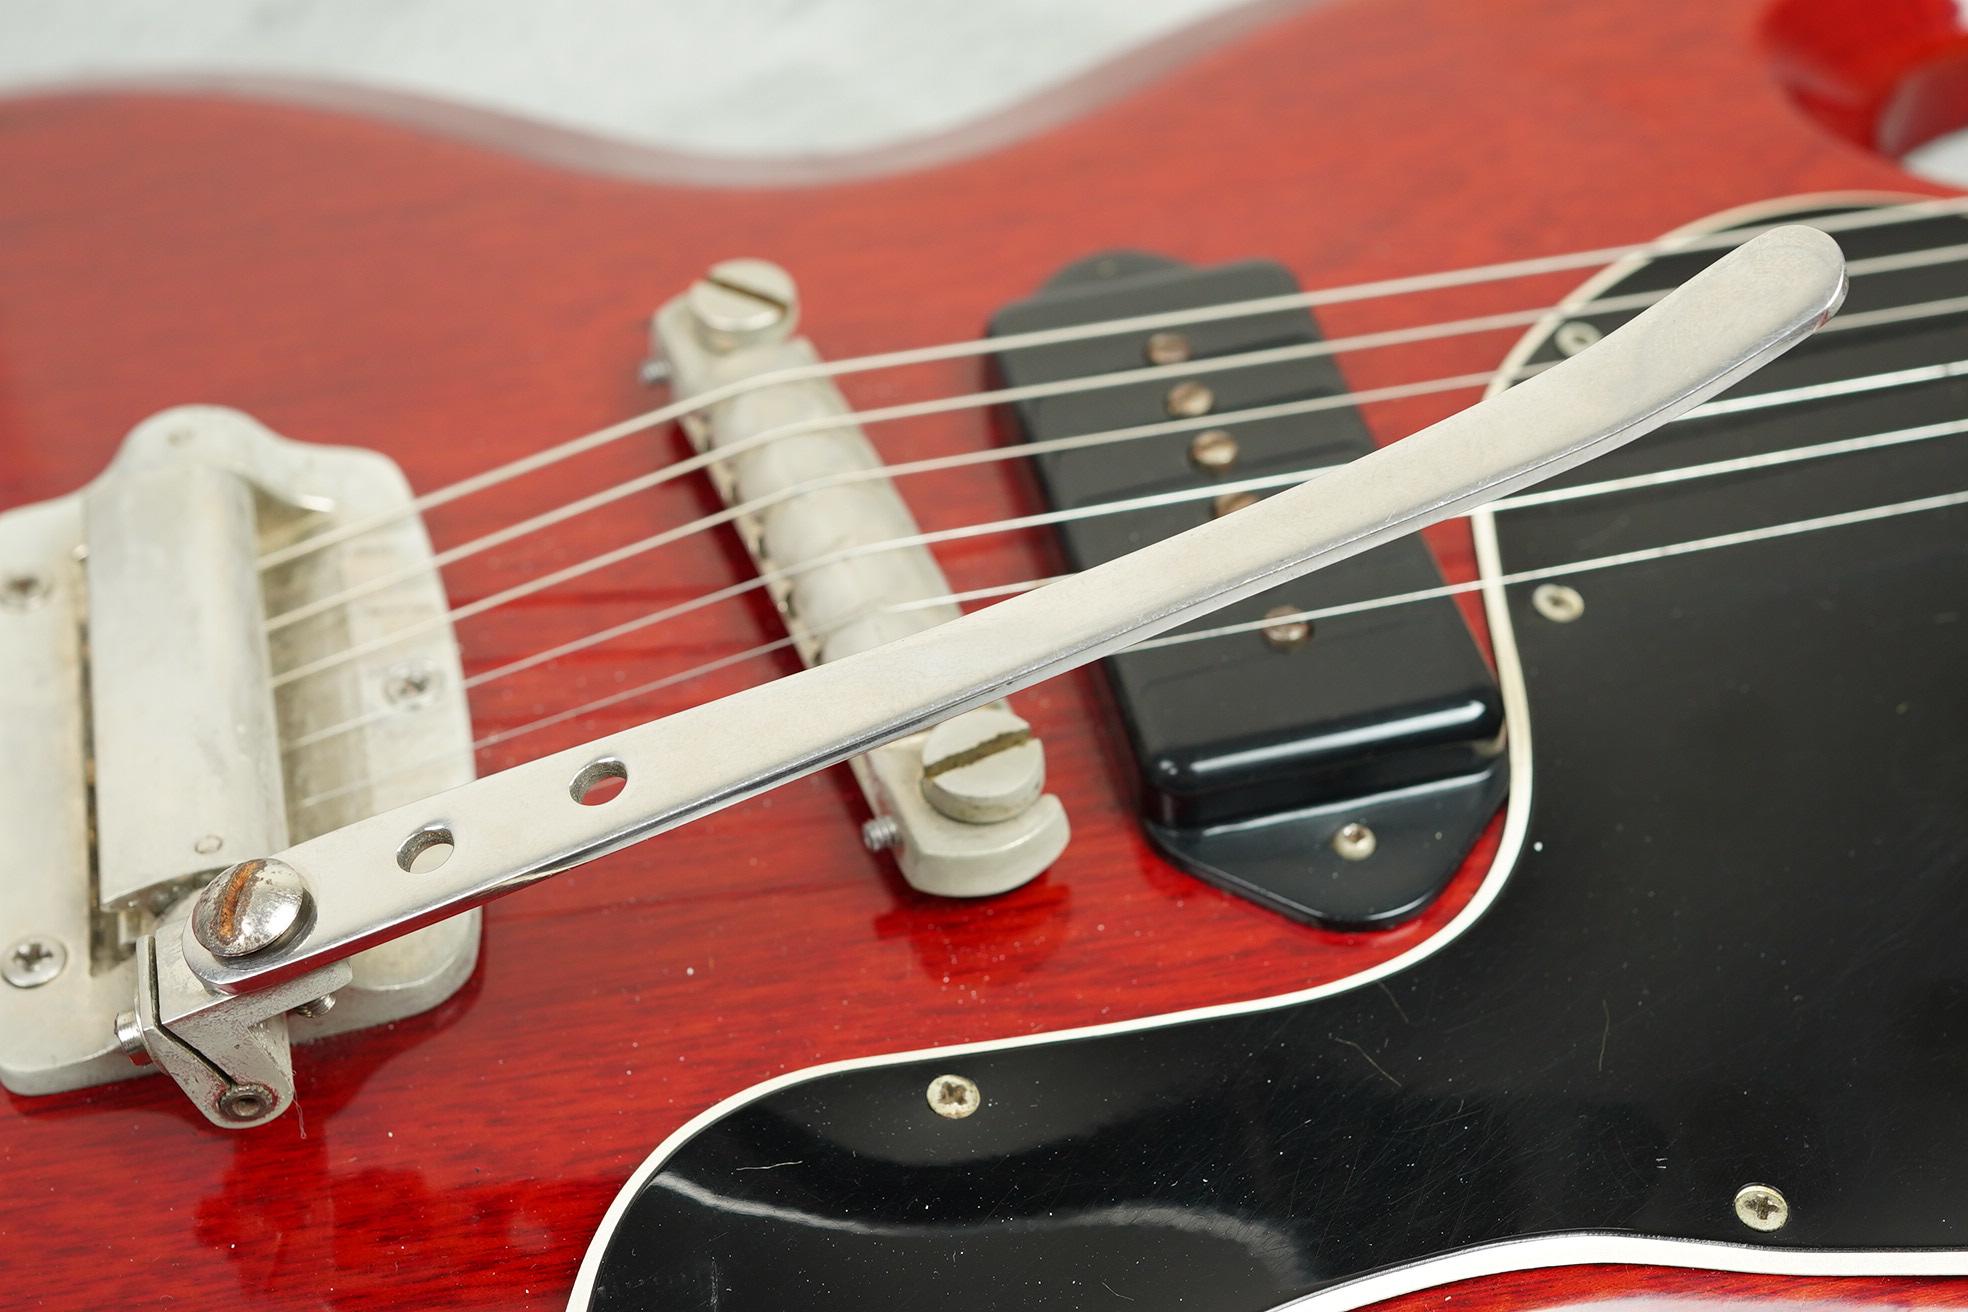 1961 Gibson Les Paul/SG Junior